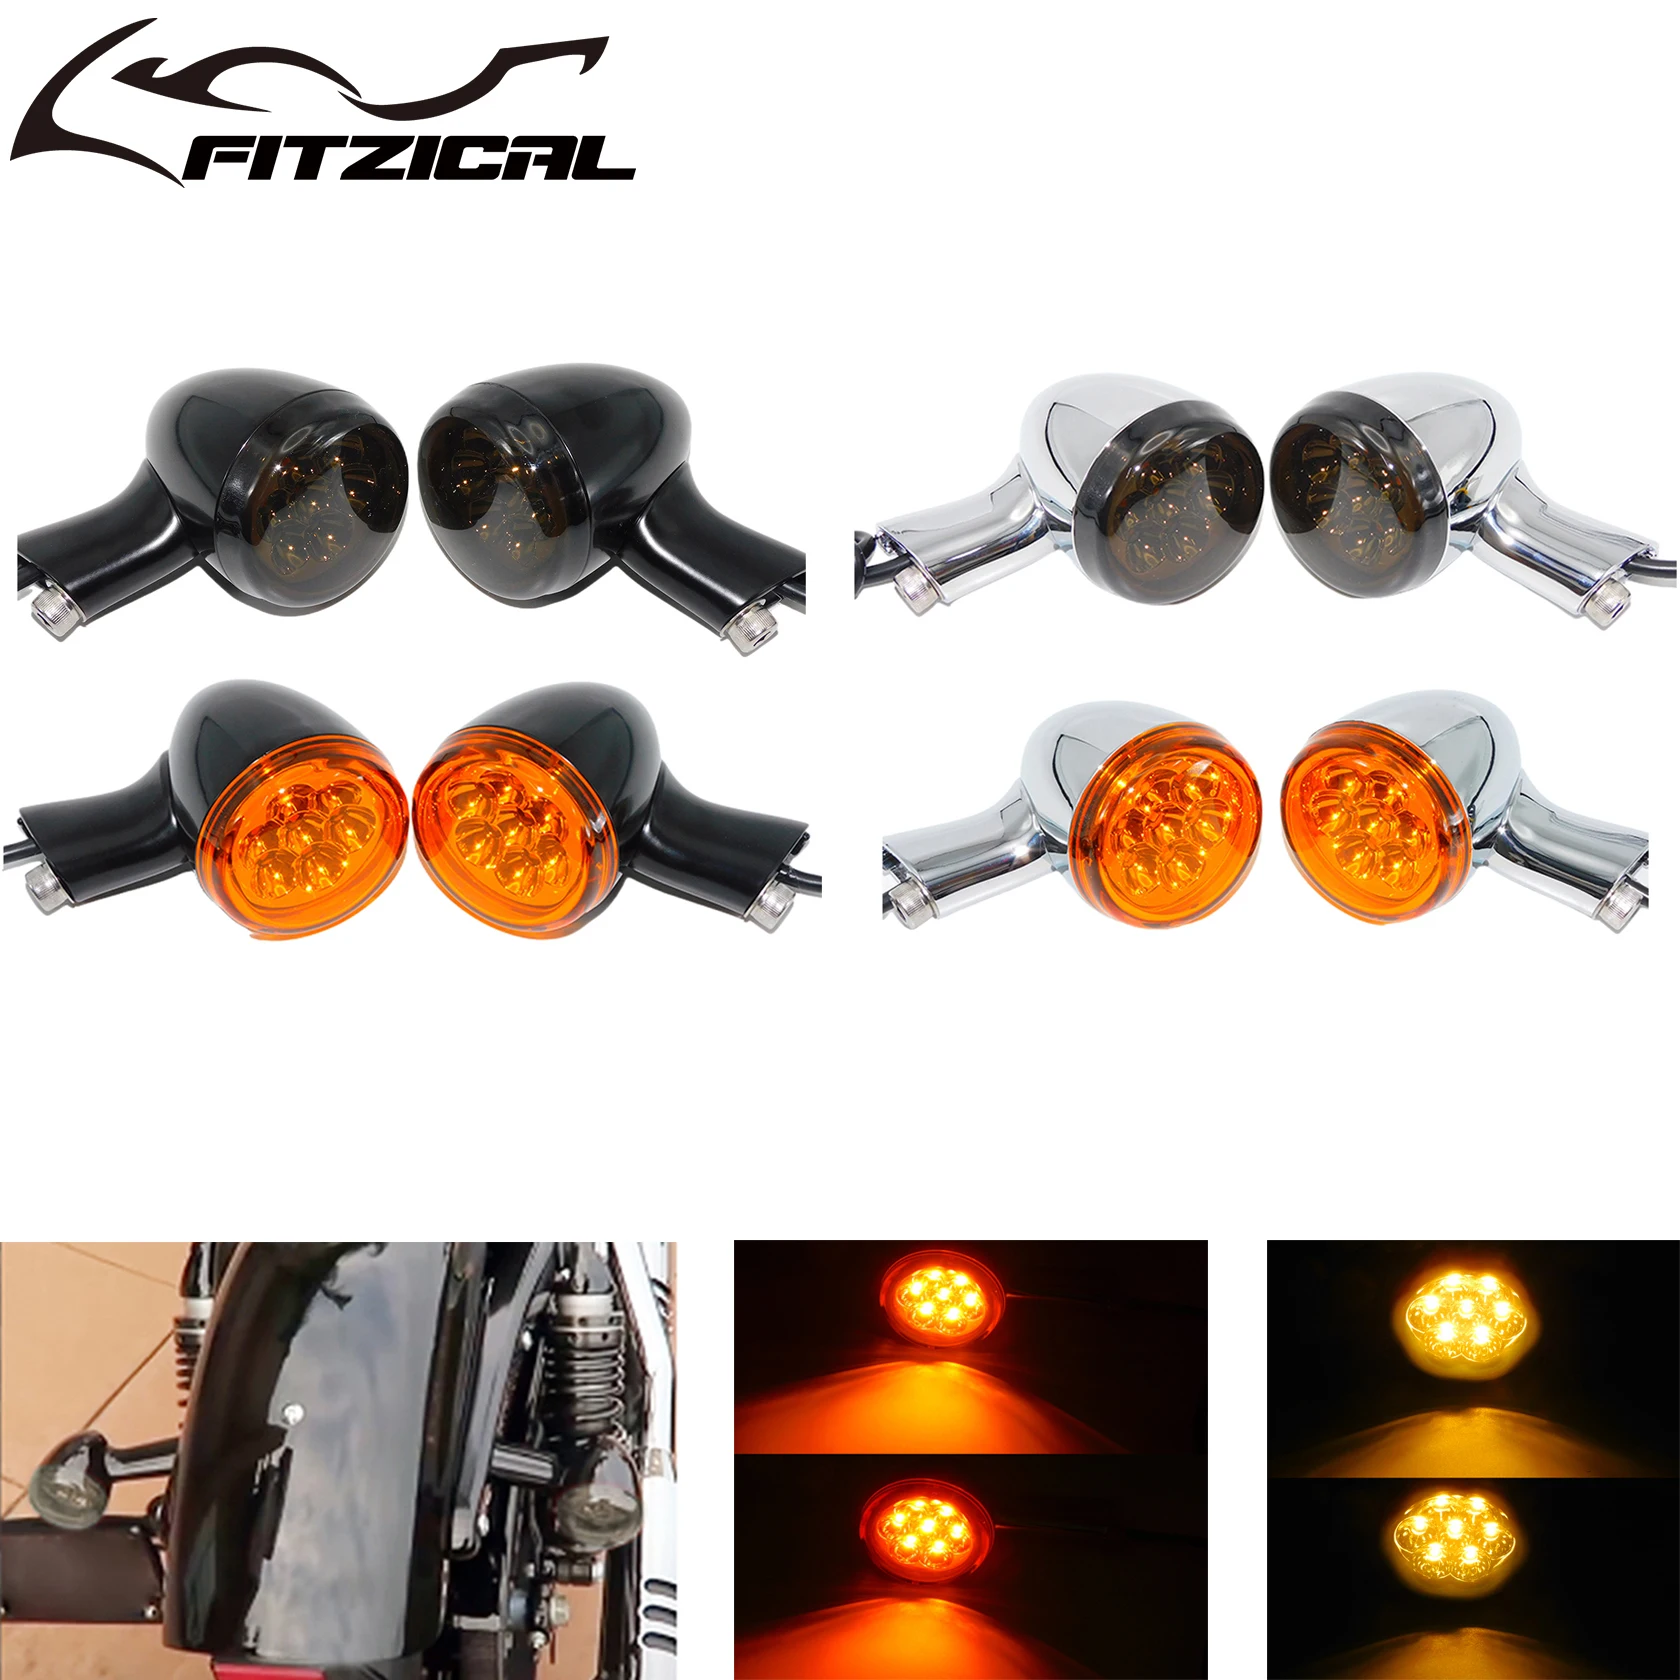 

Задний фонарь для мотоцикла с 4 проводами, фонарь для заднего фонаря, тормоз, фонарь для Harley Sportster XL883 XL1200, железный родстер, супер низкий 92-22